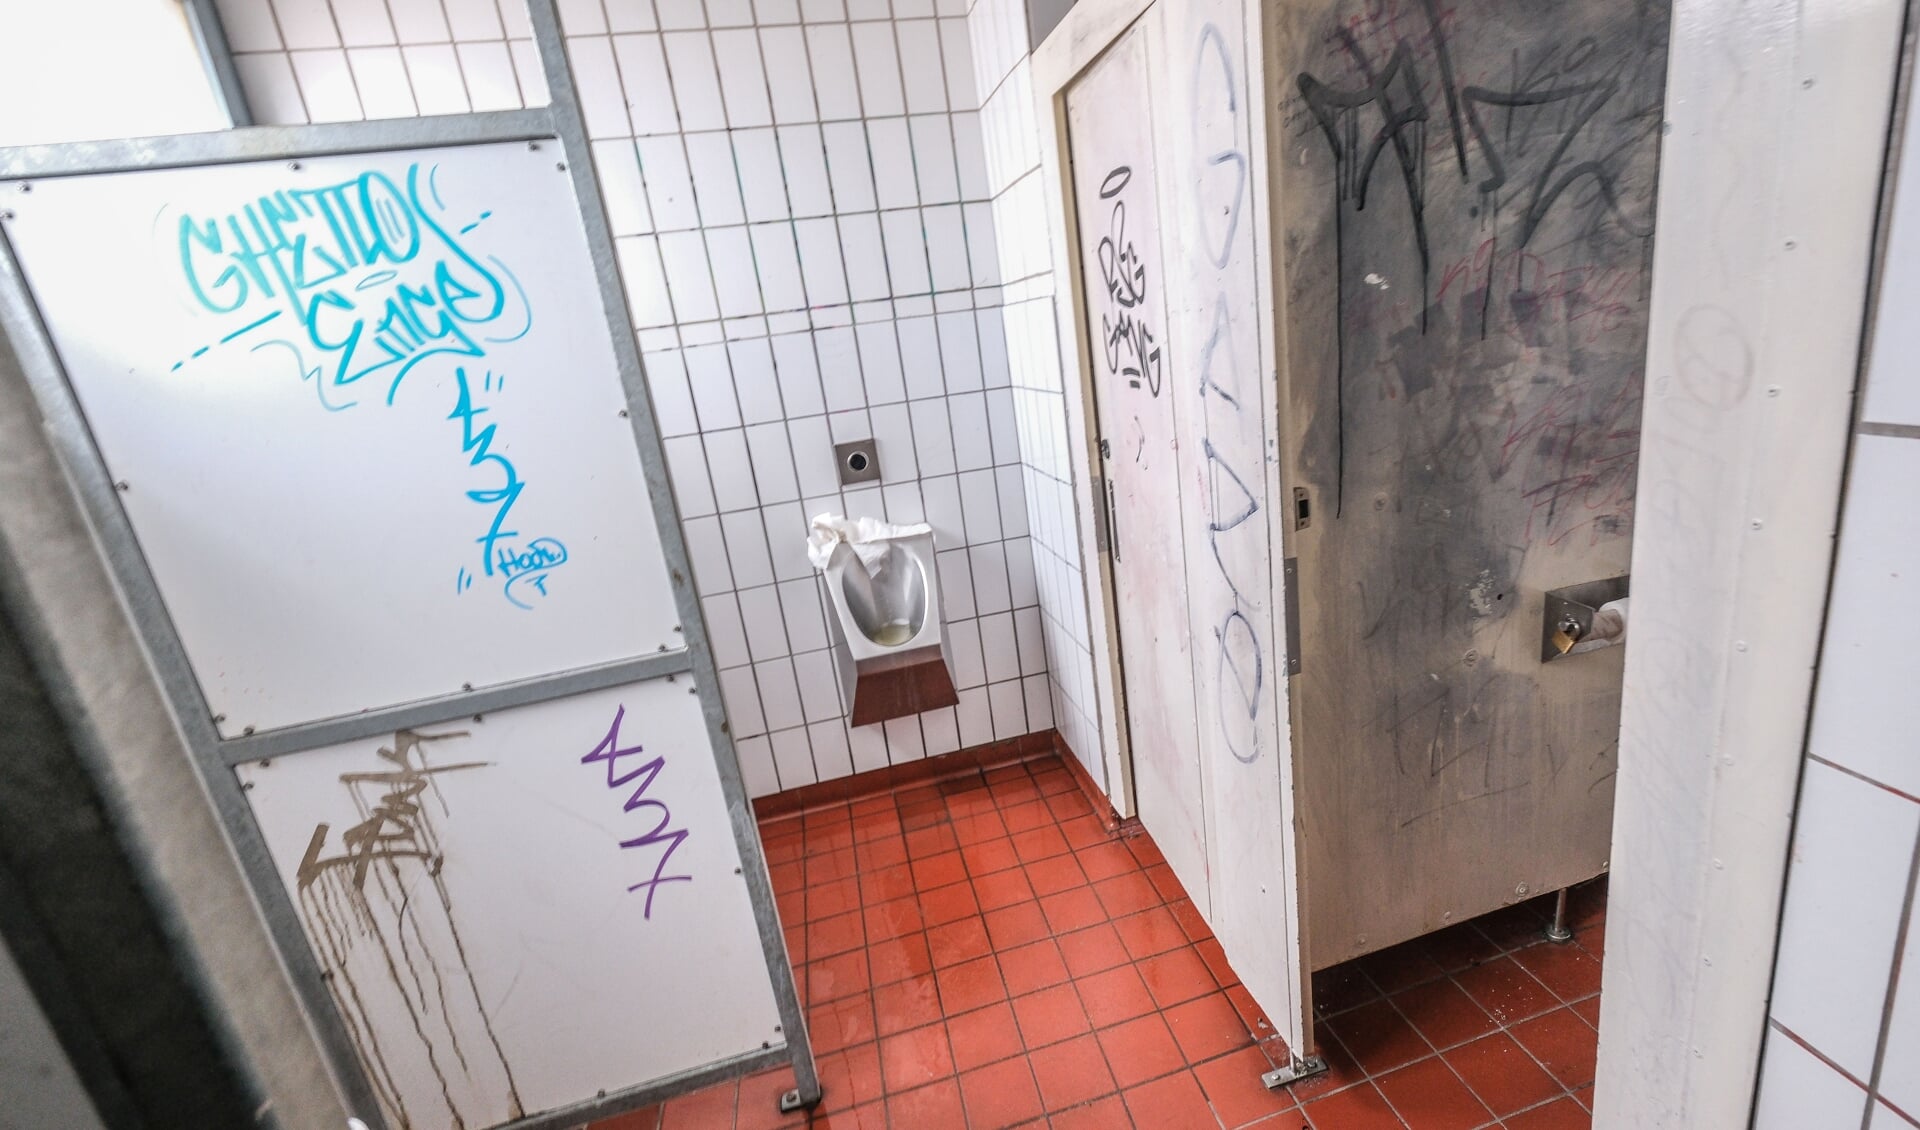 Flensborgs Seniorråd har i årevis kritiseret antallet og tilstanden af byens offentlige toiletter. Og kritikken er rådet ikke alene om. Men hidtil har det ikke hjulpet meget, som man ved selvsyn kan konstatere, for eksempel her i toiletanlægget ved Nørreport. Foto: